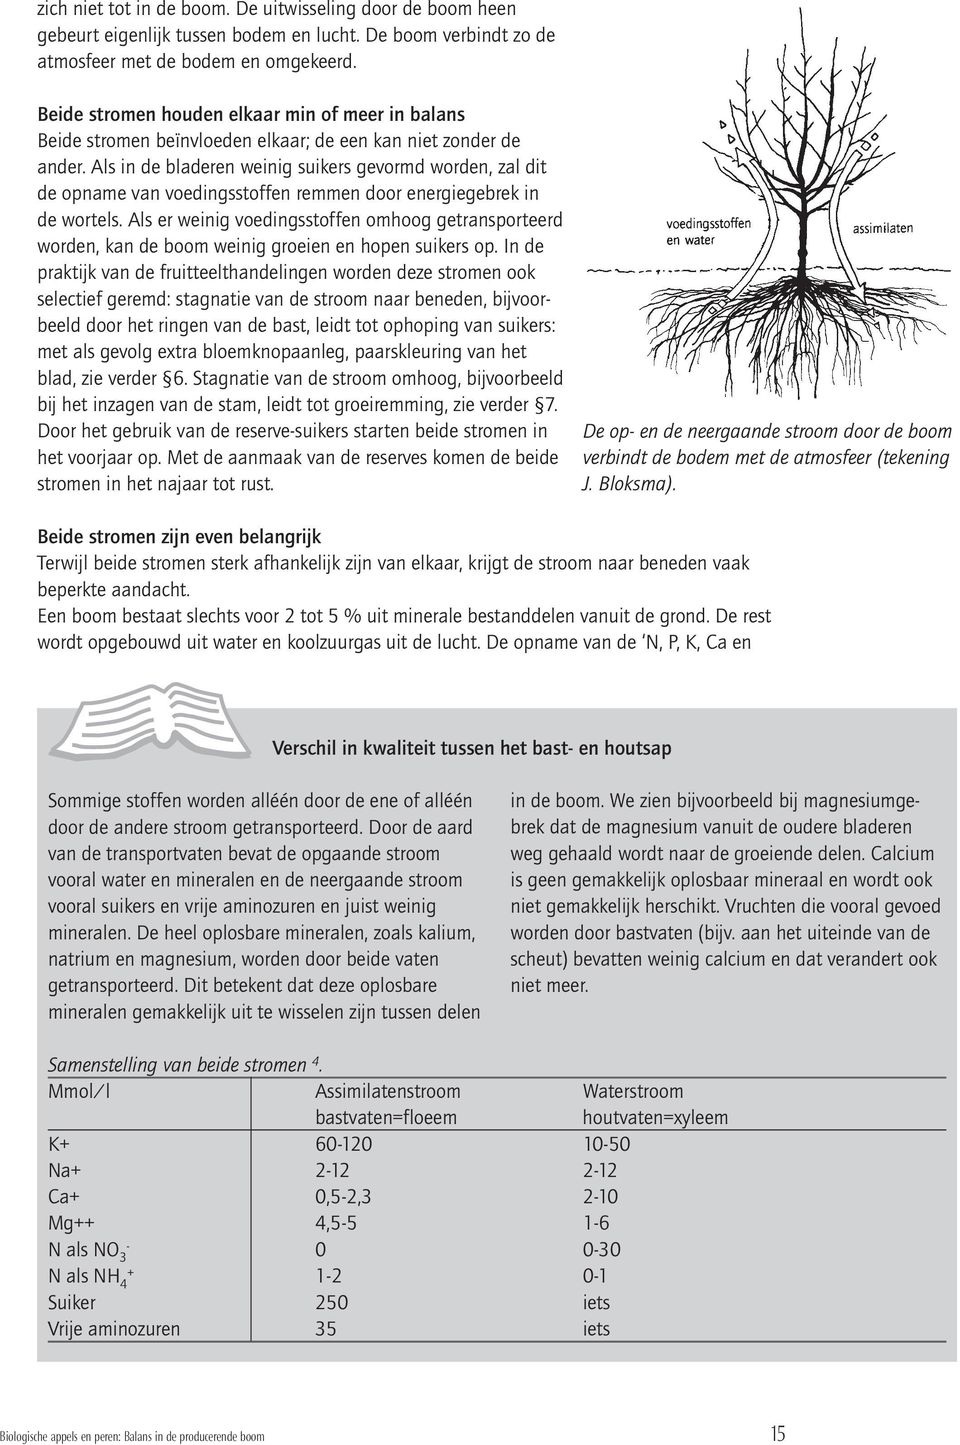 Nu zal dat in Nederland en voor de biologische teelt minder extreem liggen, maar de les is duidelijk: er is voor de praktijk nog veel productie te winnen door aandacht voor de bladkwaliteit en het De